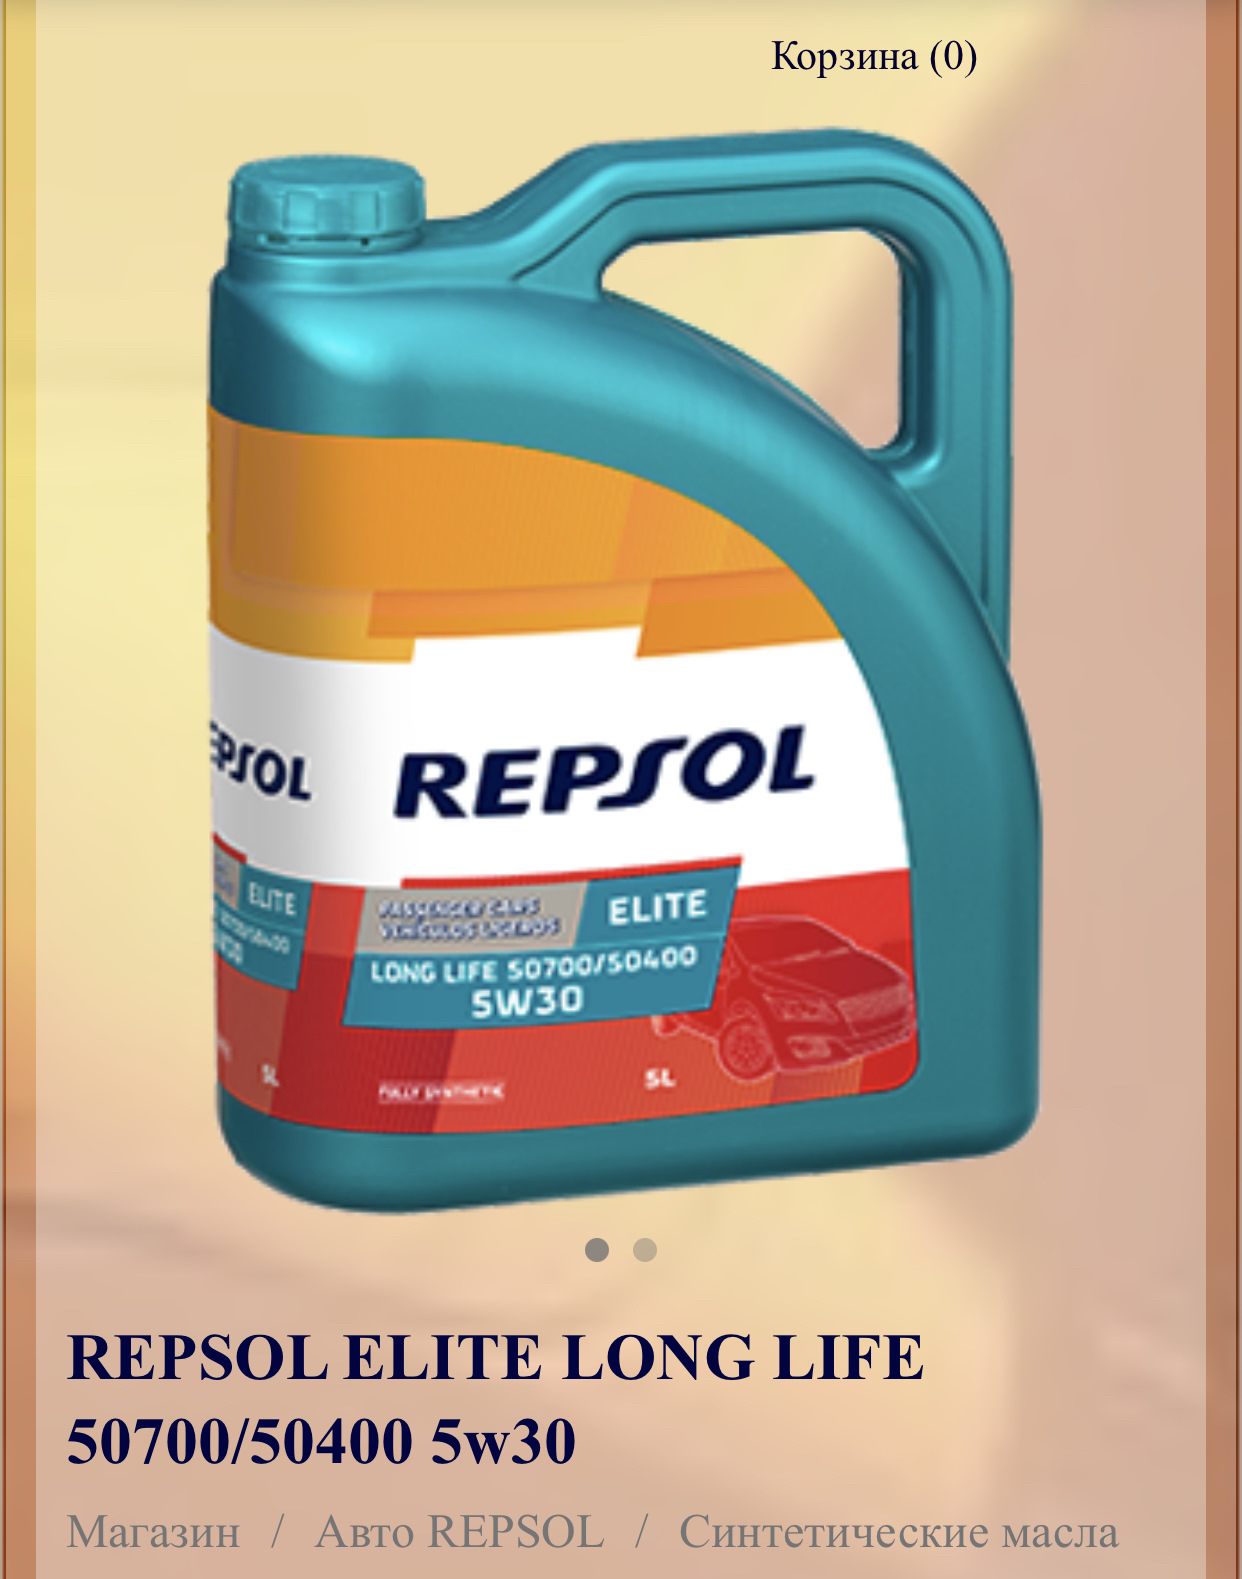 Repsol long life 5w 30. Repsol Elite long Life 50700/50400 5w30. Repsol Evolution long Life 5w30. Repsol Evolution 5w30. Repsol 5w30 504.